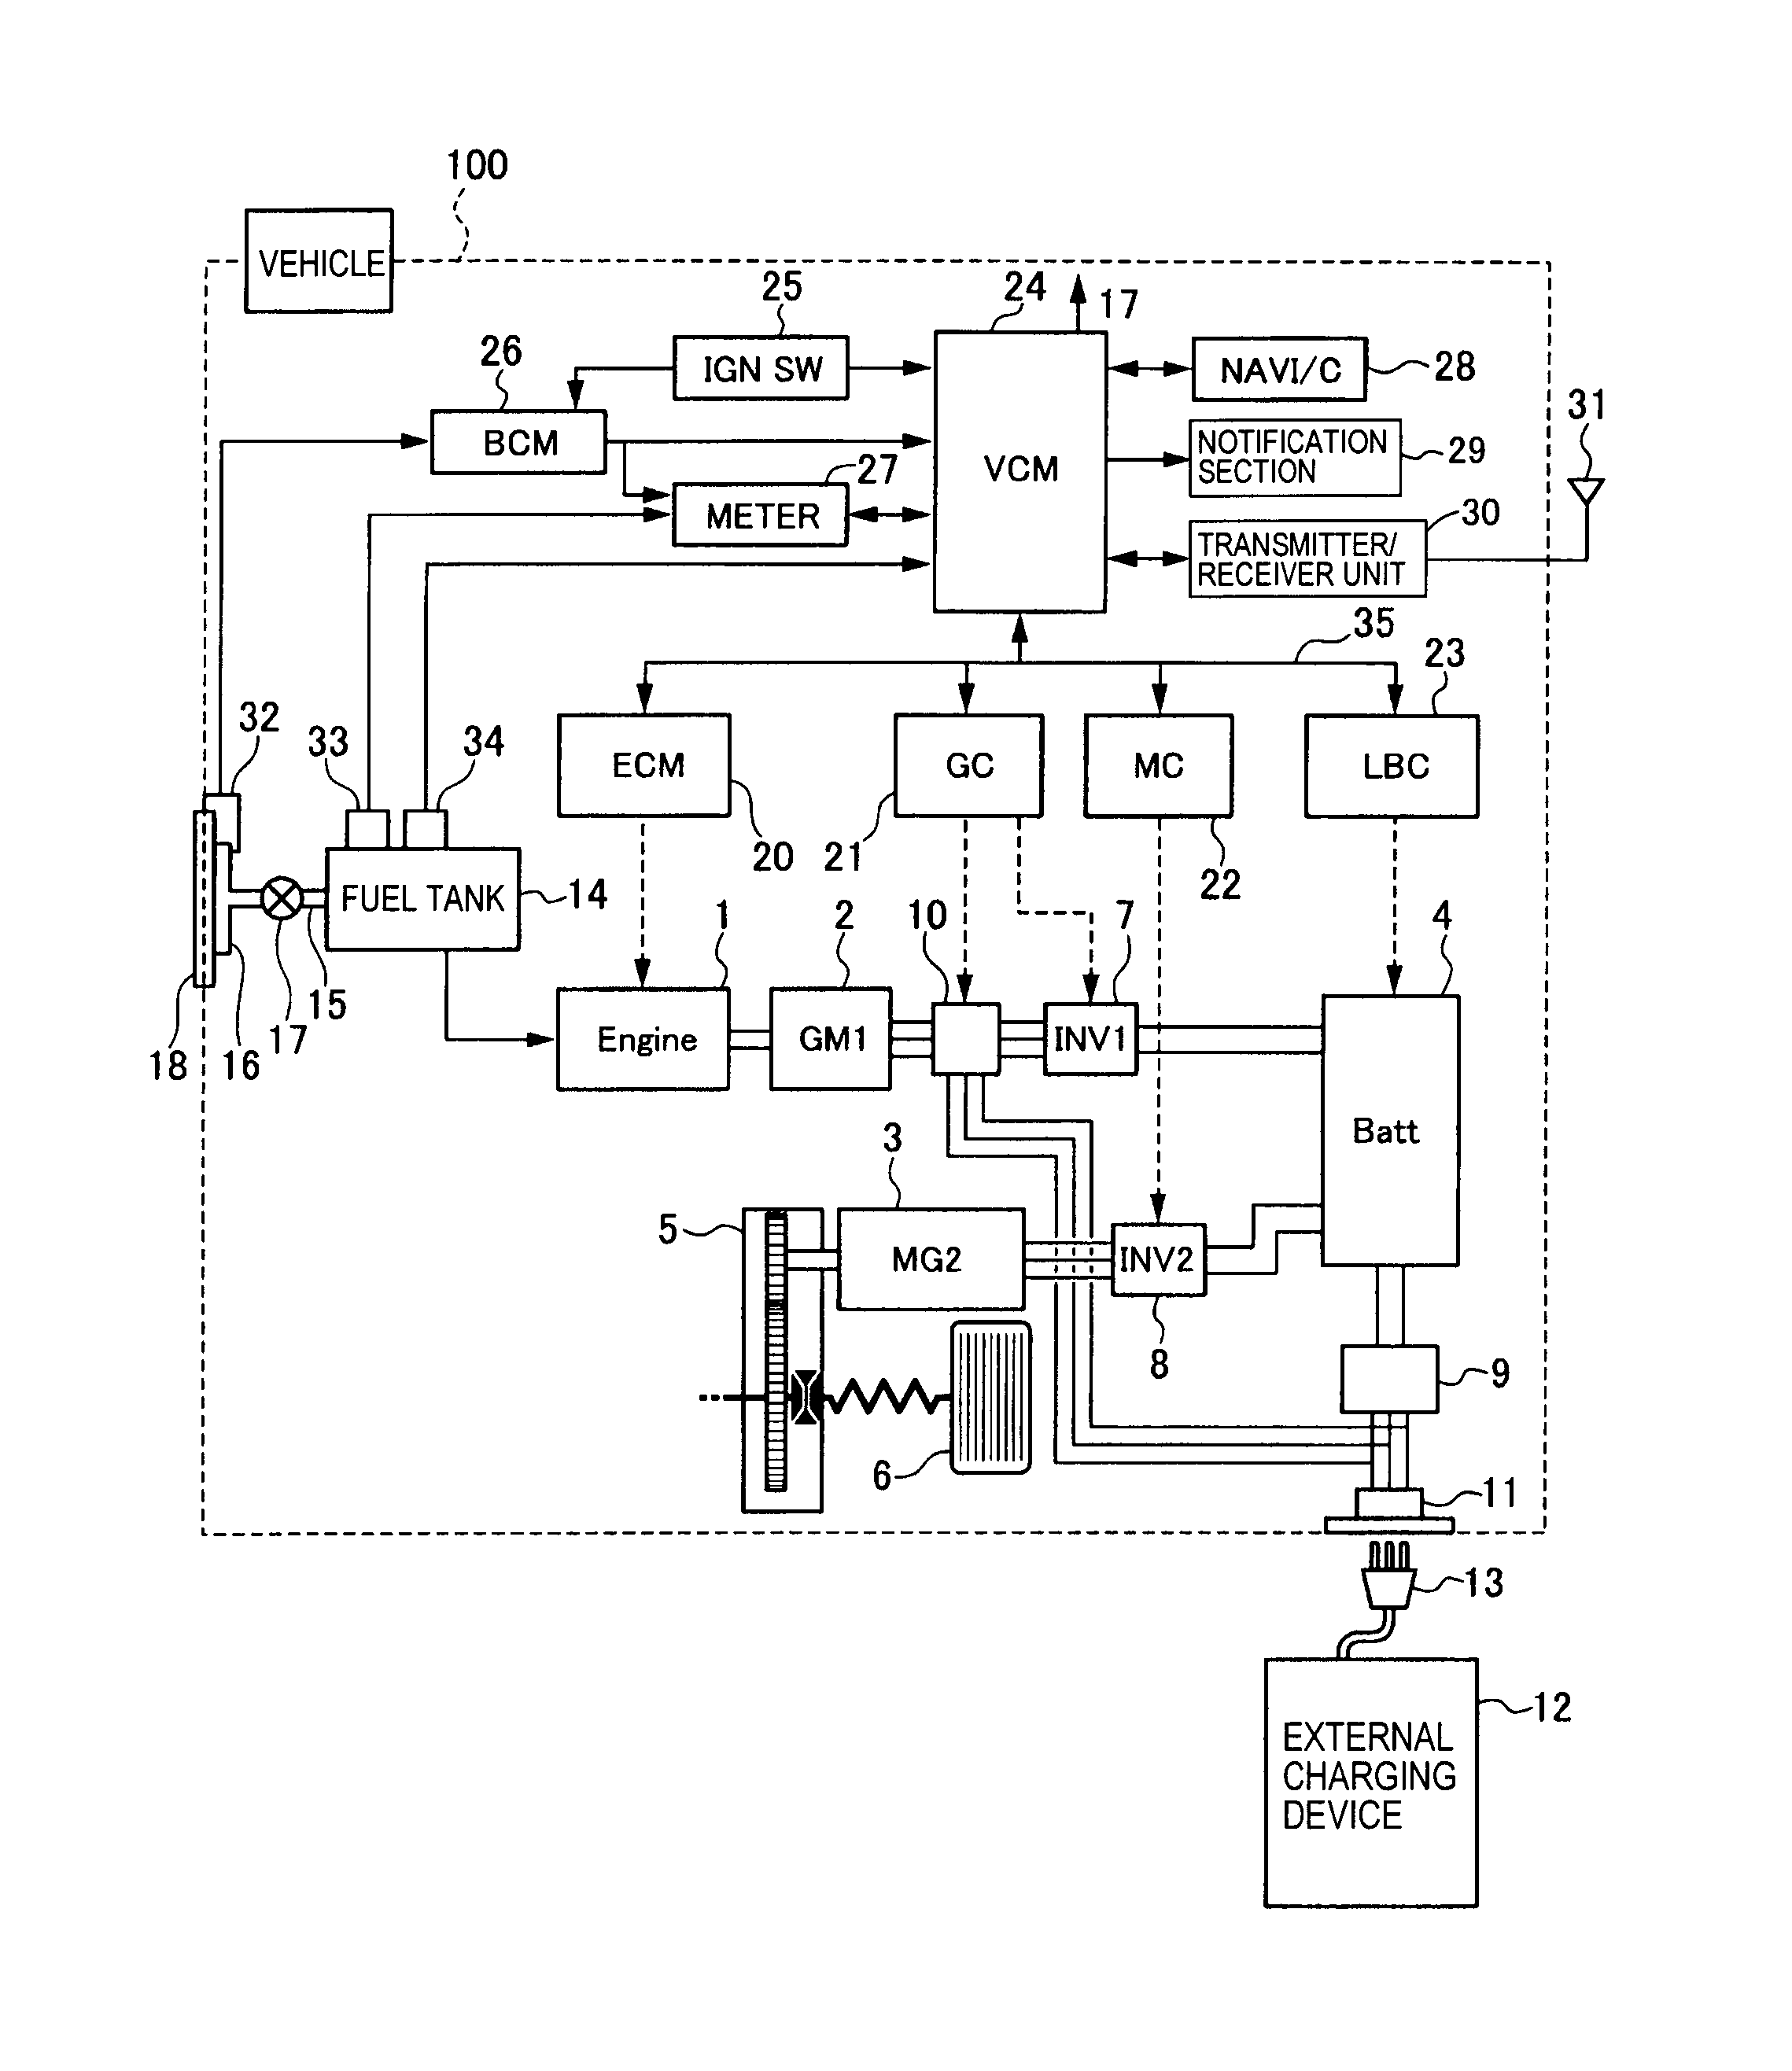 hobart a200 mixer parts diagram